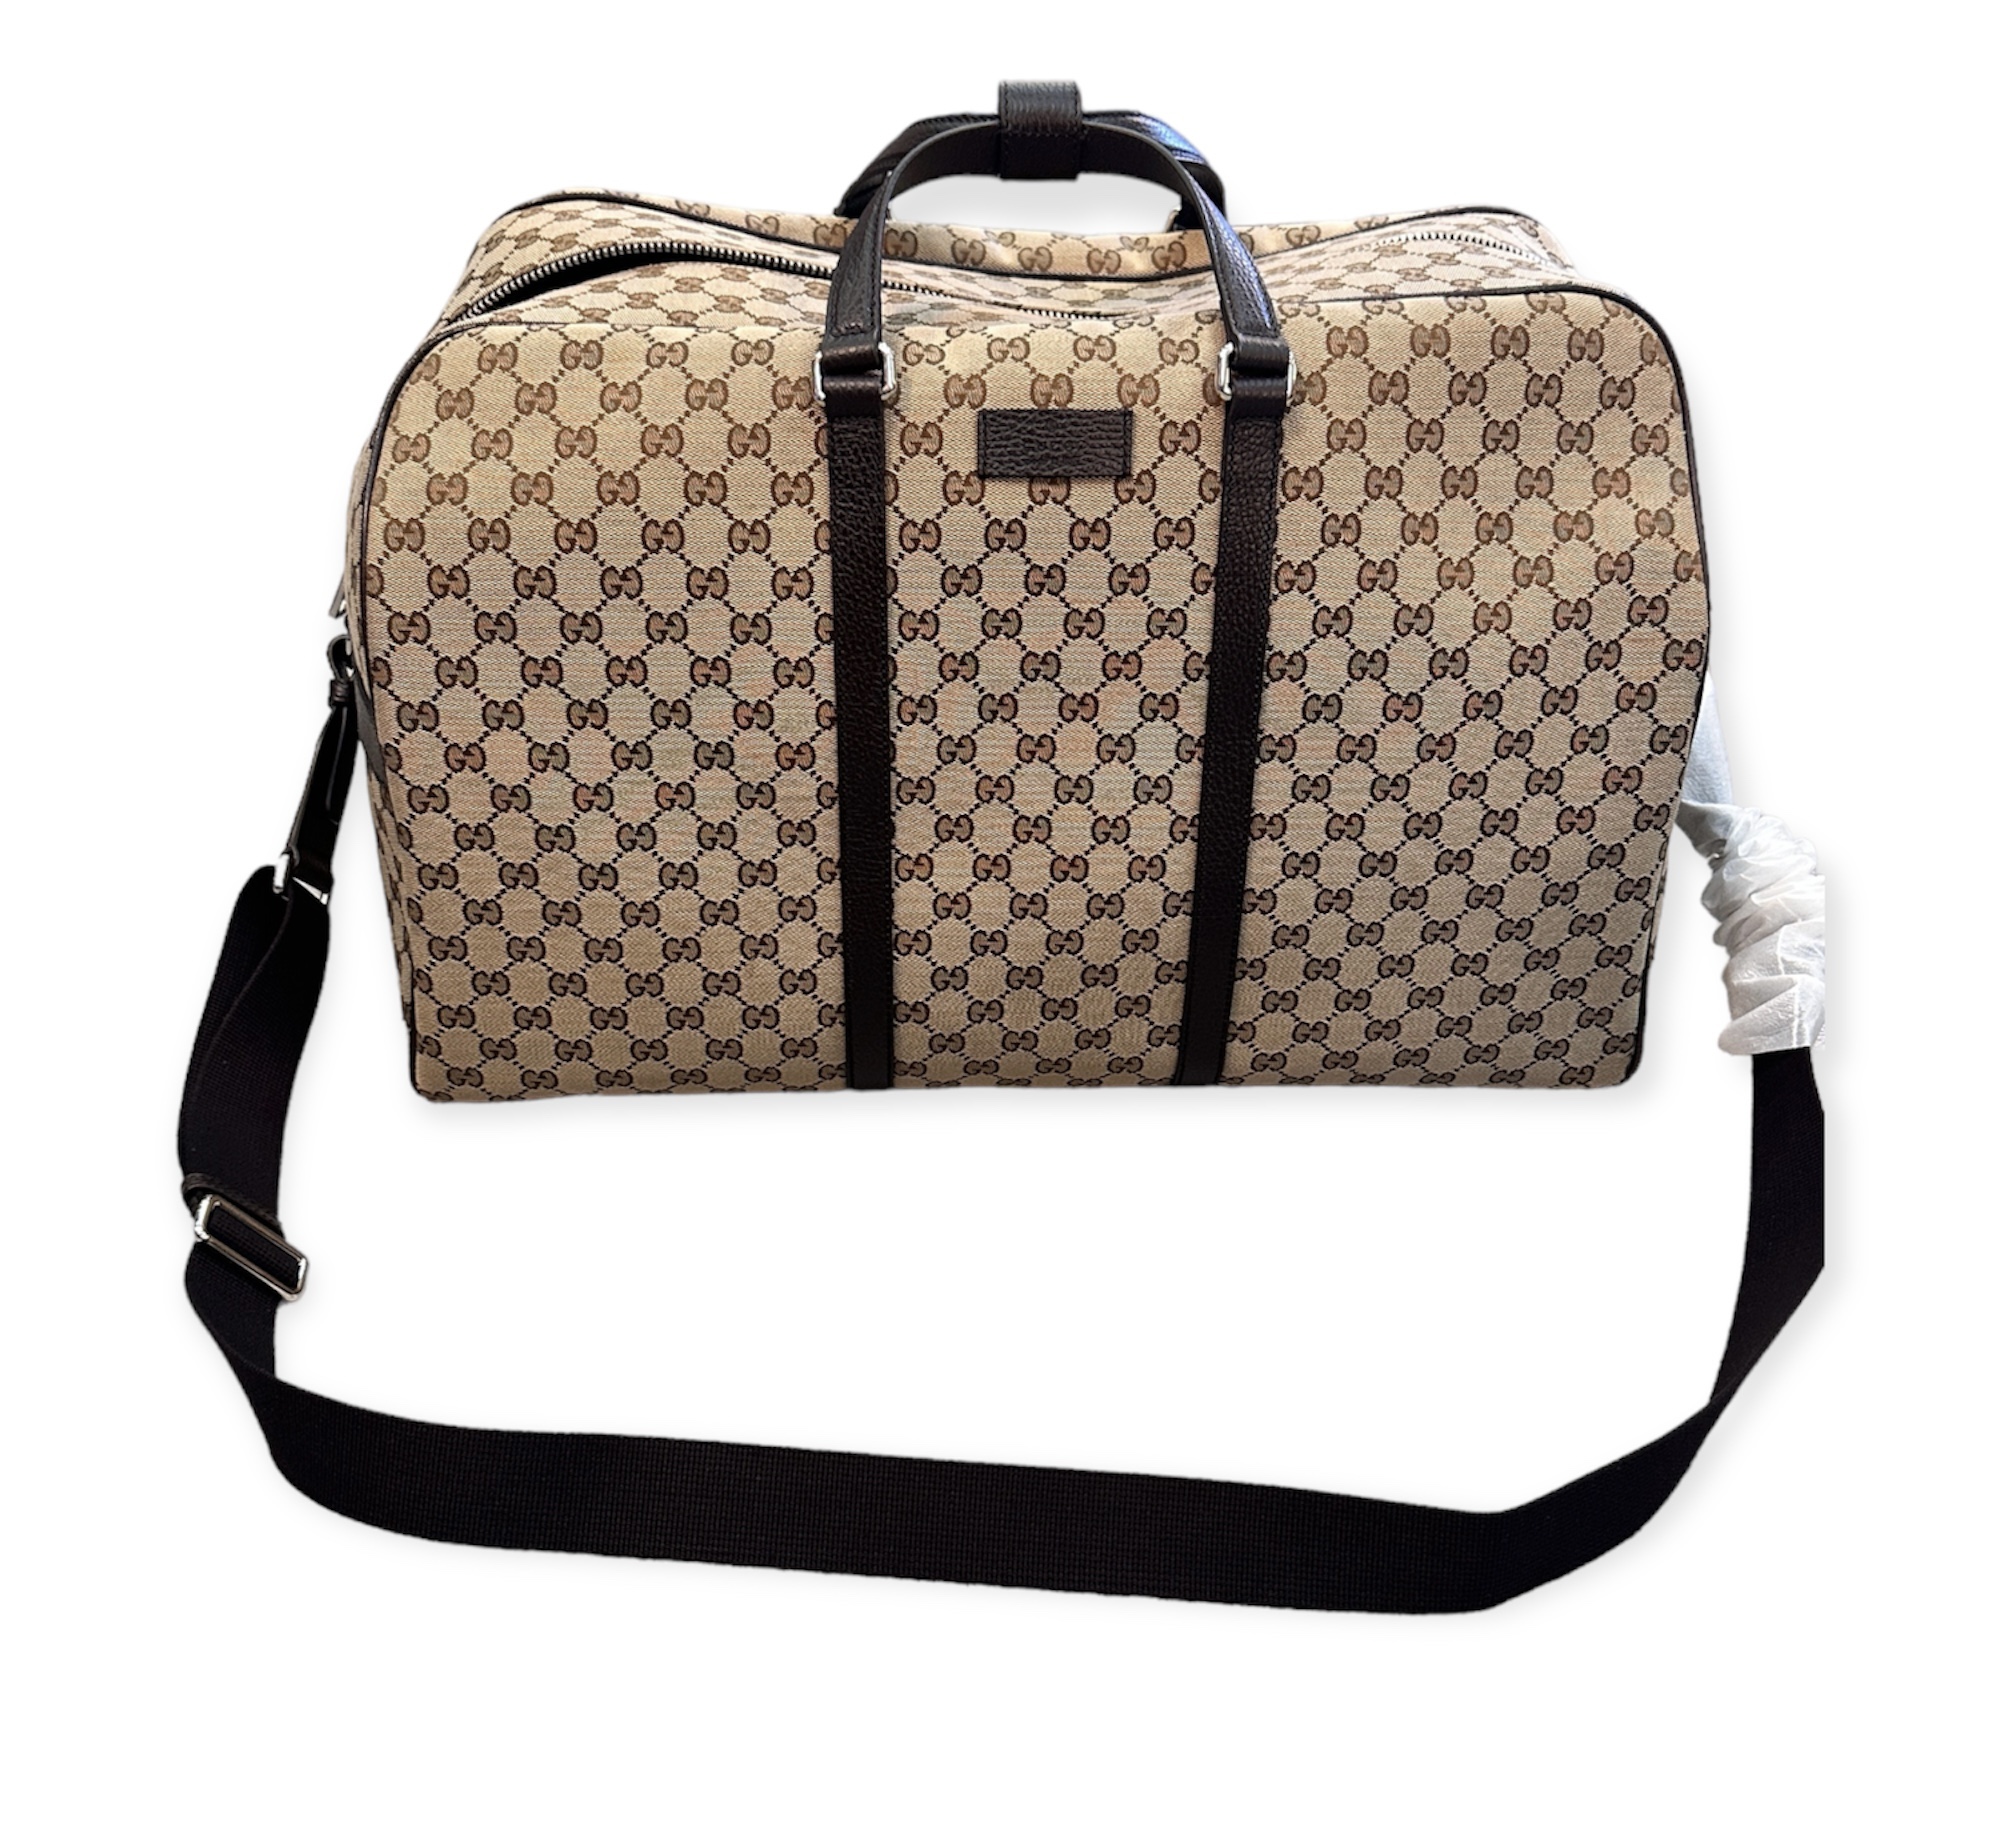 Gucci Herren stoff reisetasche in mettallic